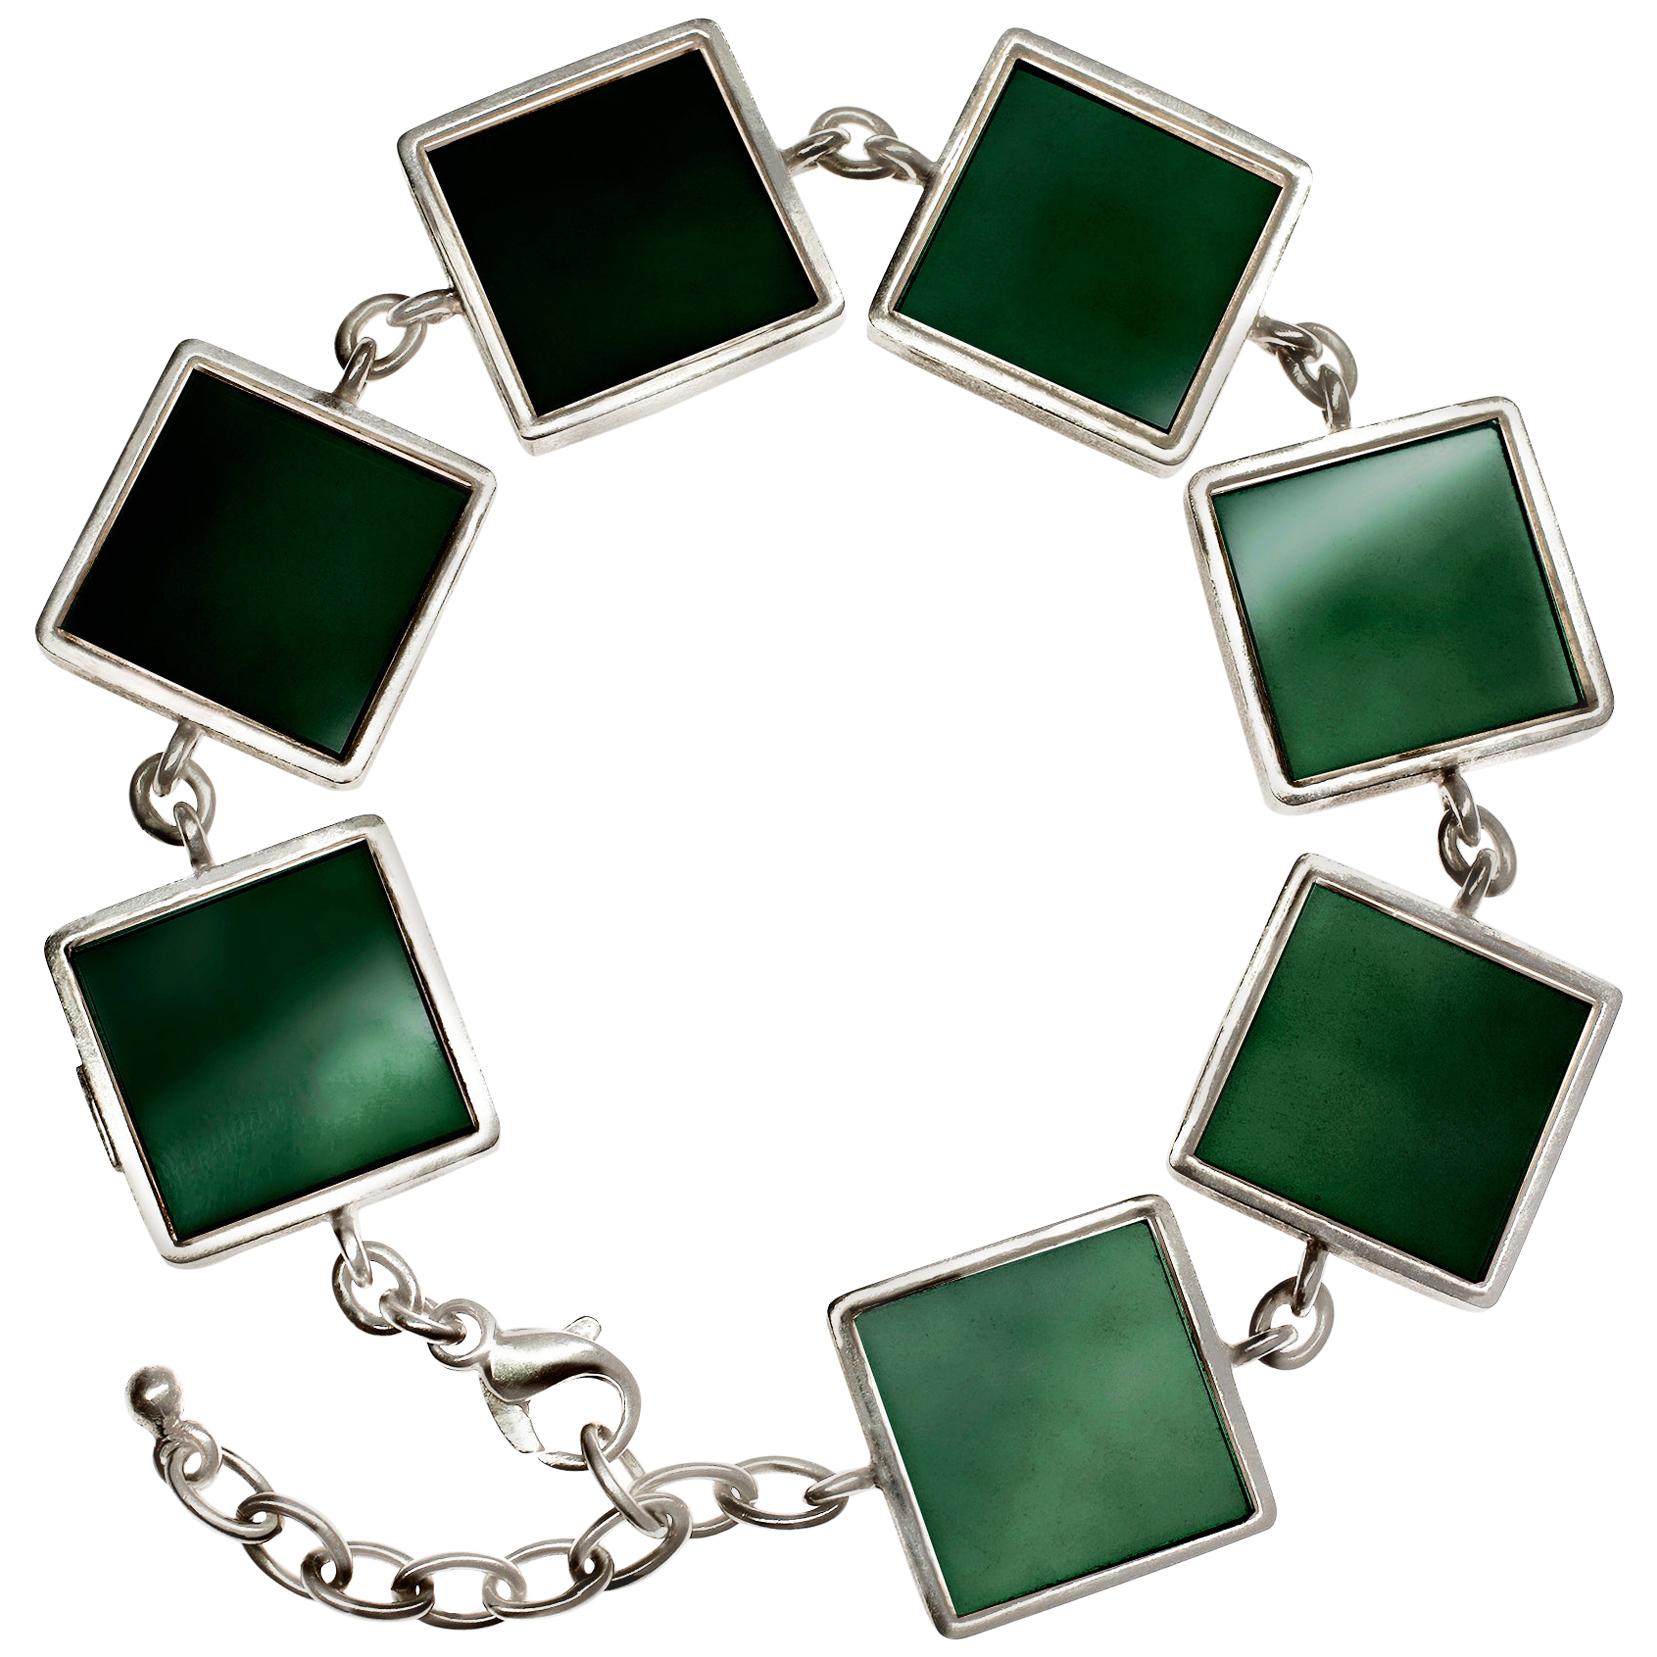 Featured in Vogue White Gold Art Deco Style Bracelet with Dark Green Quartzes